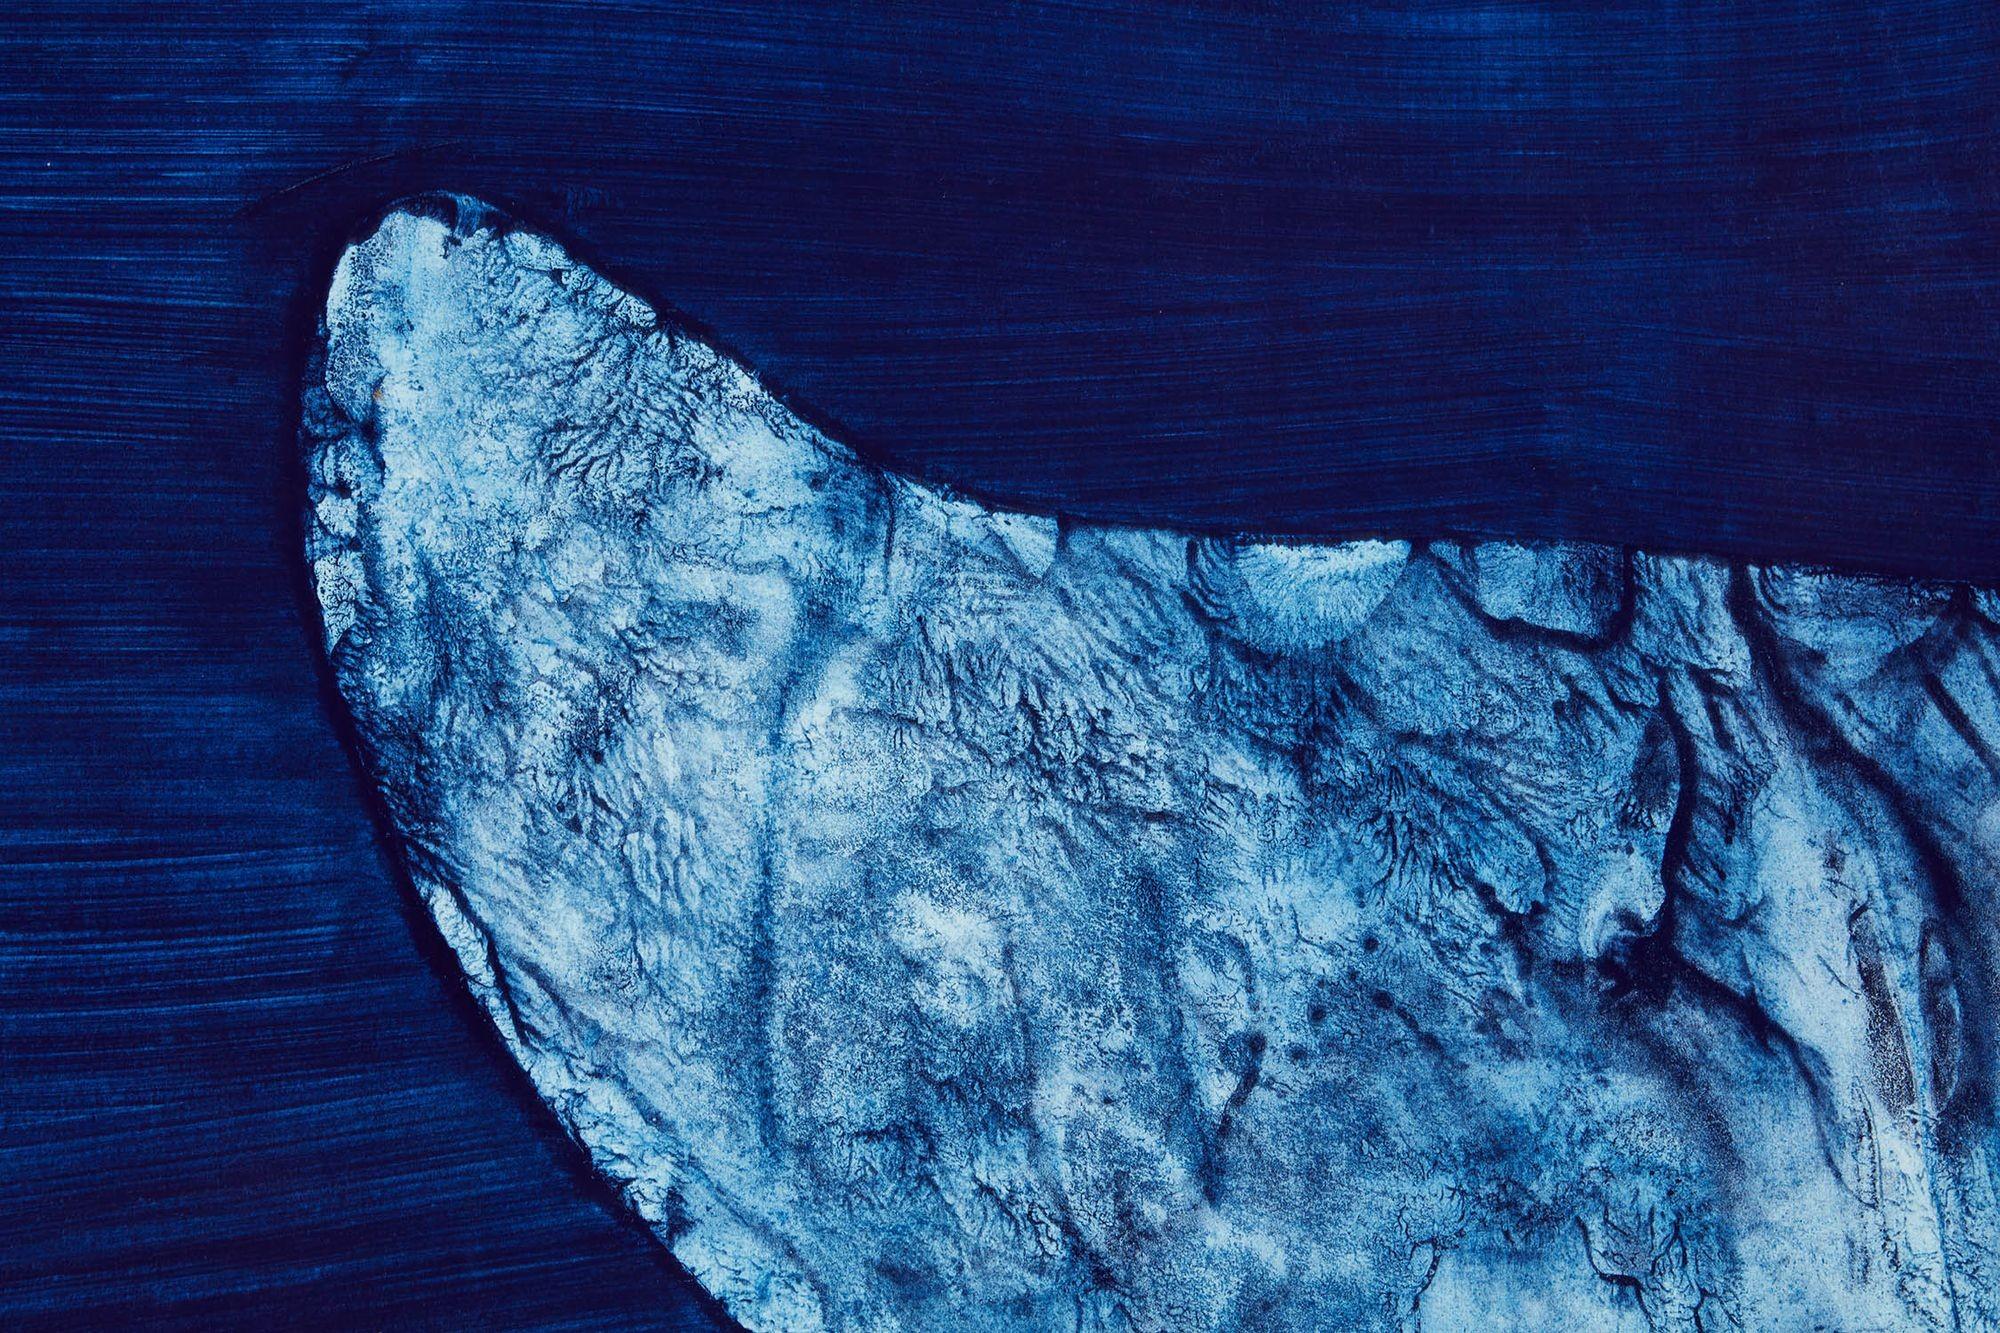 White Fluke, ein Kunstwerk des britischen Künstlers Julian Meredith. Meredith ist bekannt für seine schönen Darstellungen von Walen und Fischen, und seine Werke befinden sich in mehreren britischen Museen. Er hat auch riesige Kunstwerke von Walen